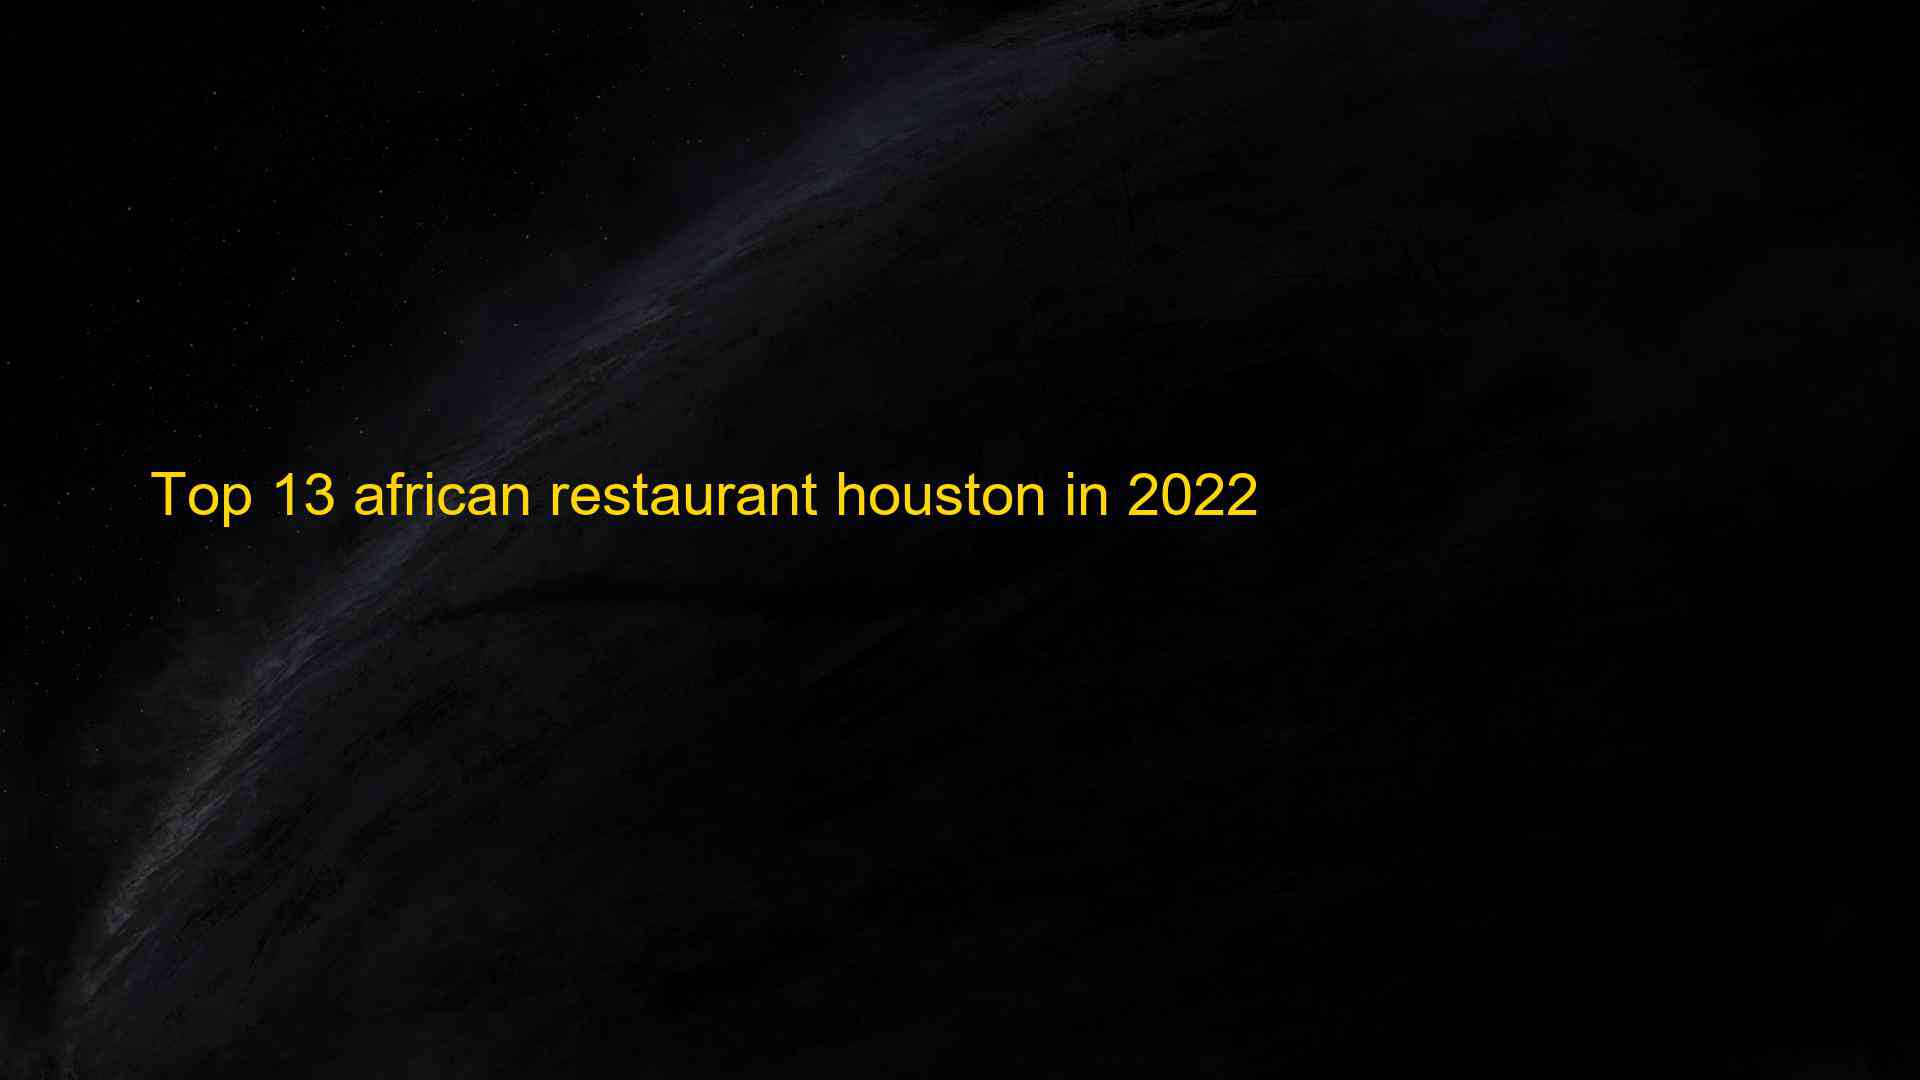 Top 13 african restaurant houston in 2022 1663175983